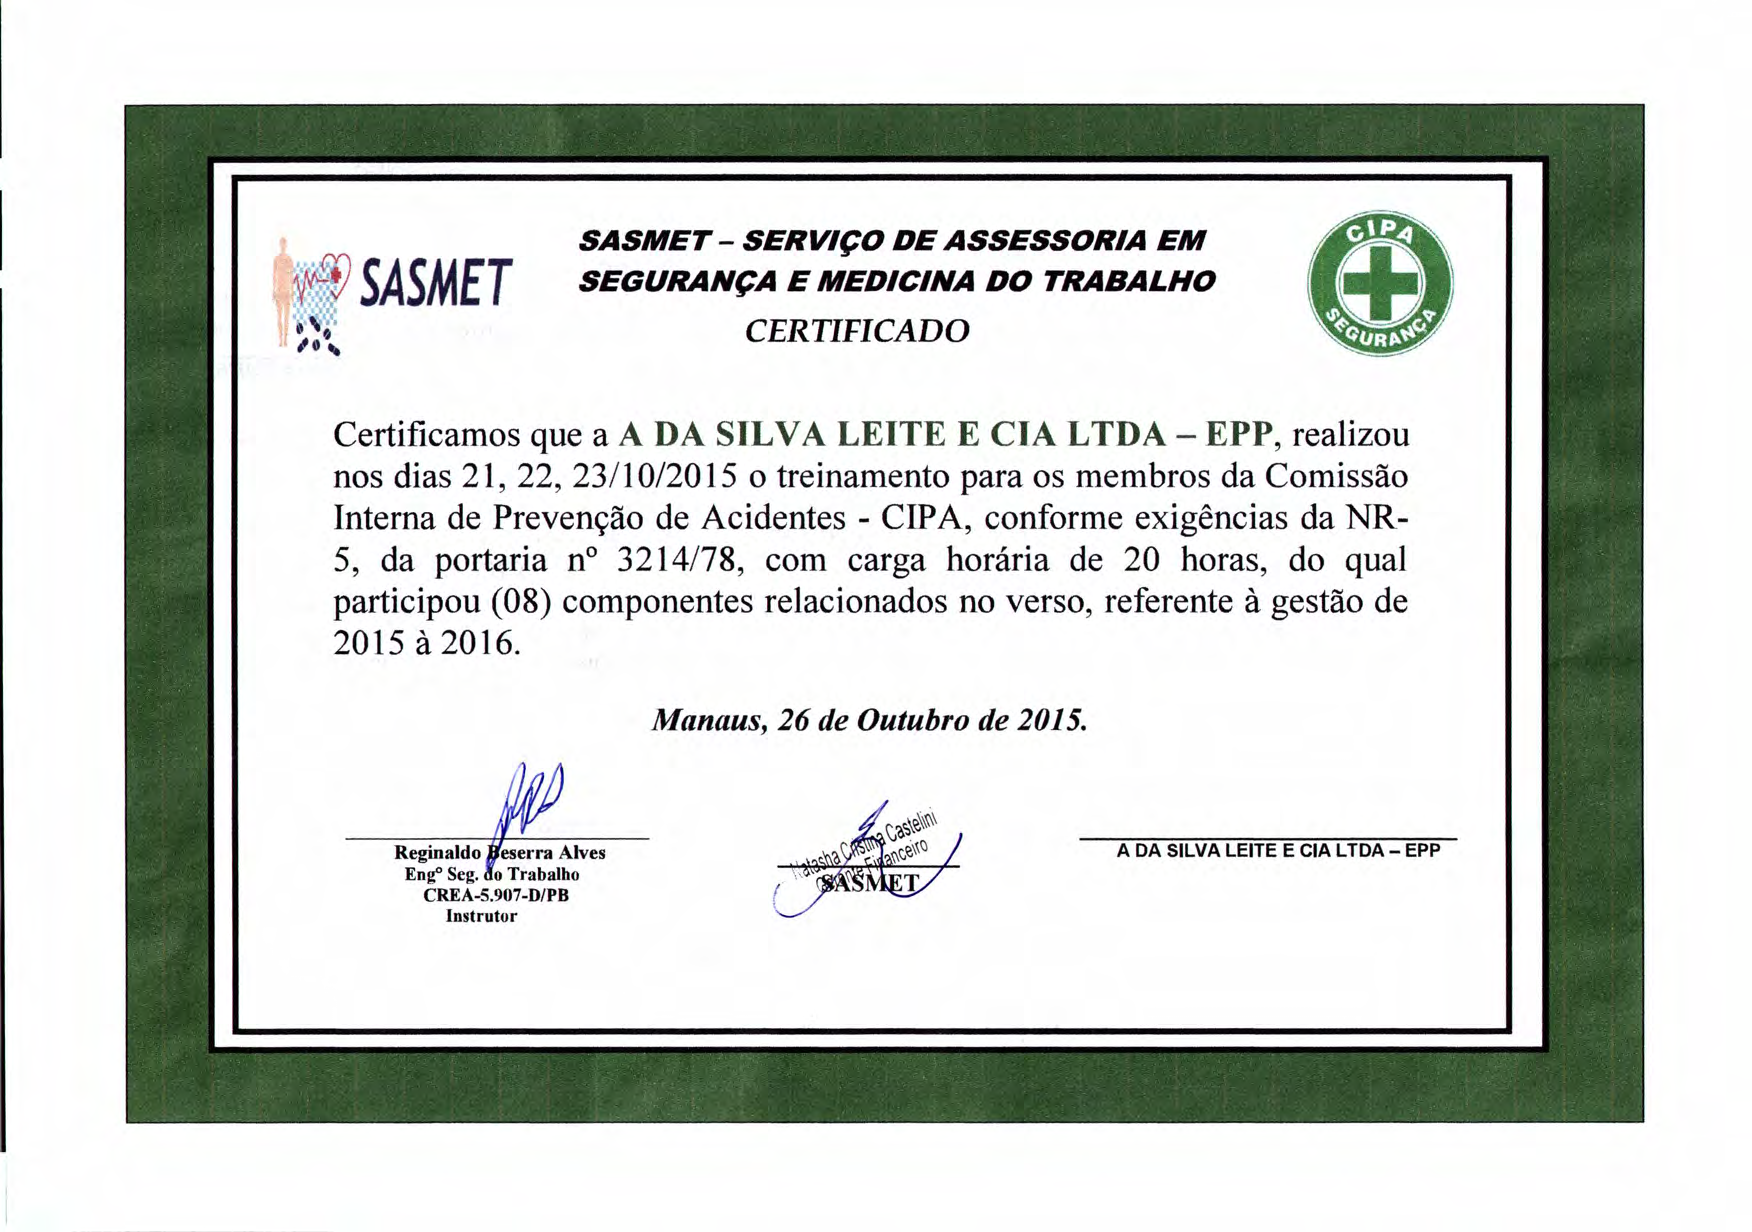 SASMET Certificamos que a A DA SILVA LEITE E ela LTDA - EPP, realizou nos dias 21,22,23/10/2015 o treinamento para os membros da Comissão Interna de Prevenção de Acidentes - CIPA, conforme exigências